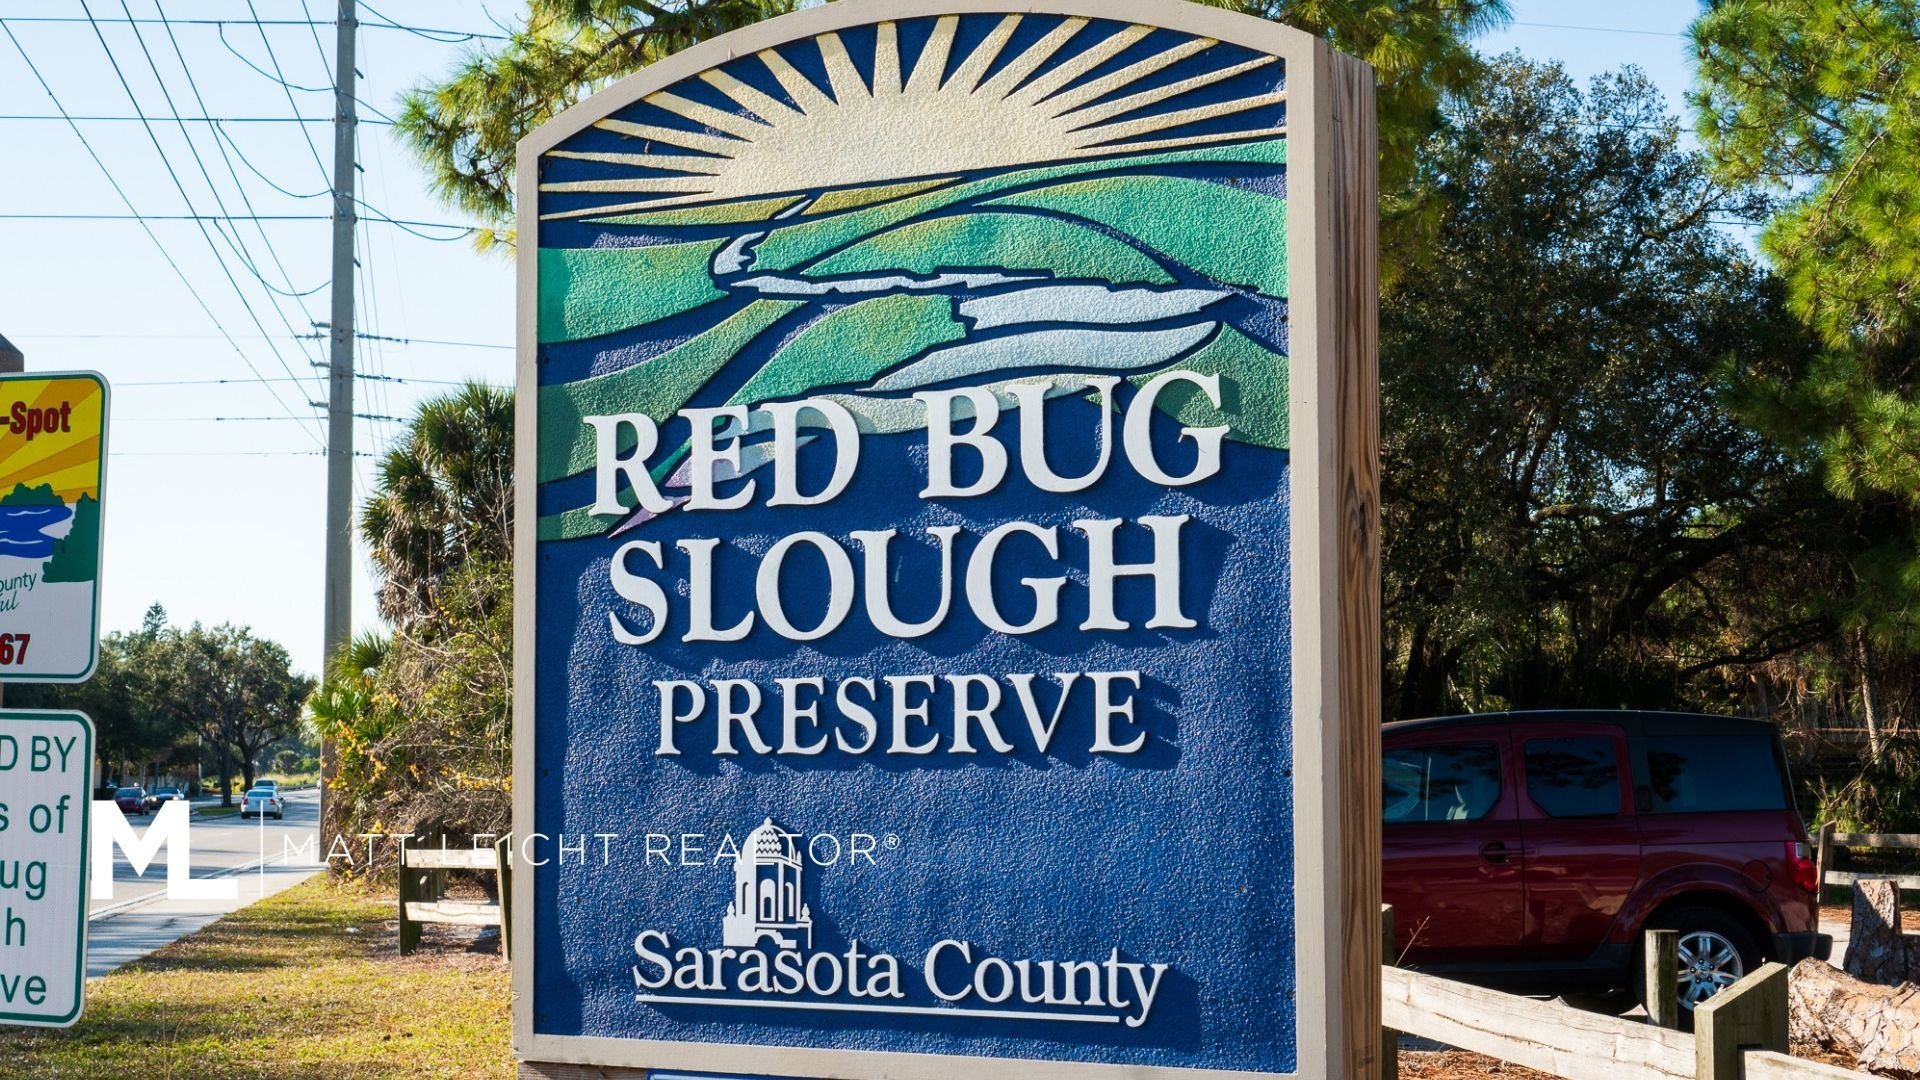 Red Bug Slough Preserve